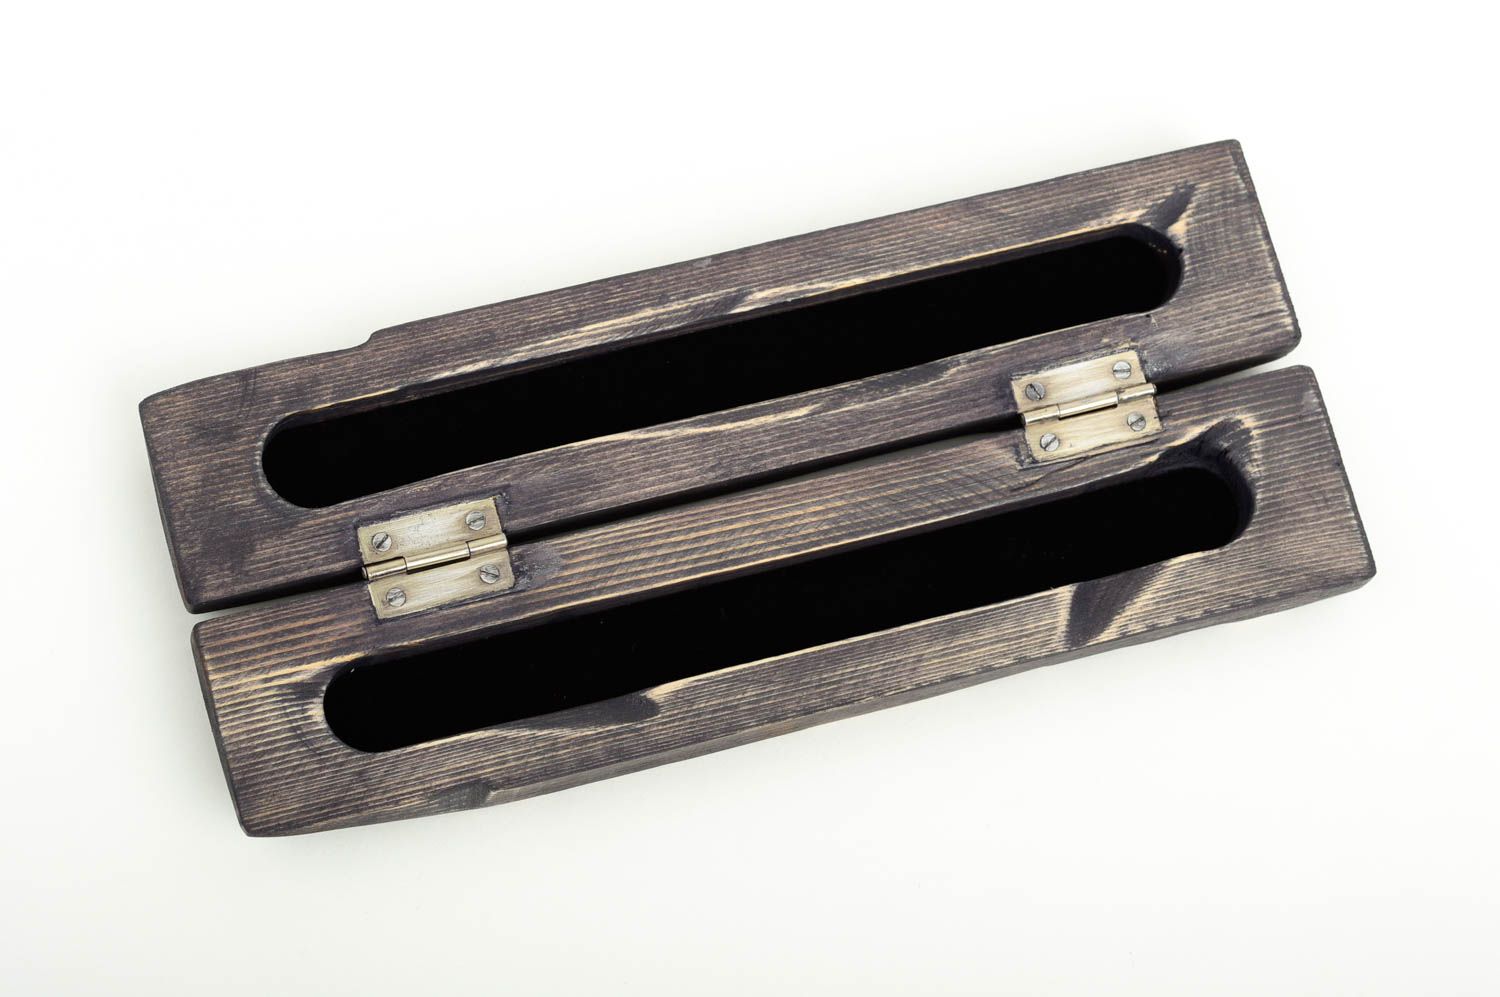 Handmade pen case wooden pen holder pen case holder gift ideas for friends photo 3